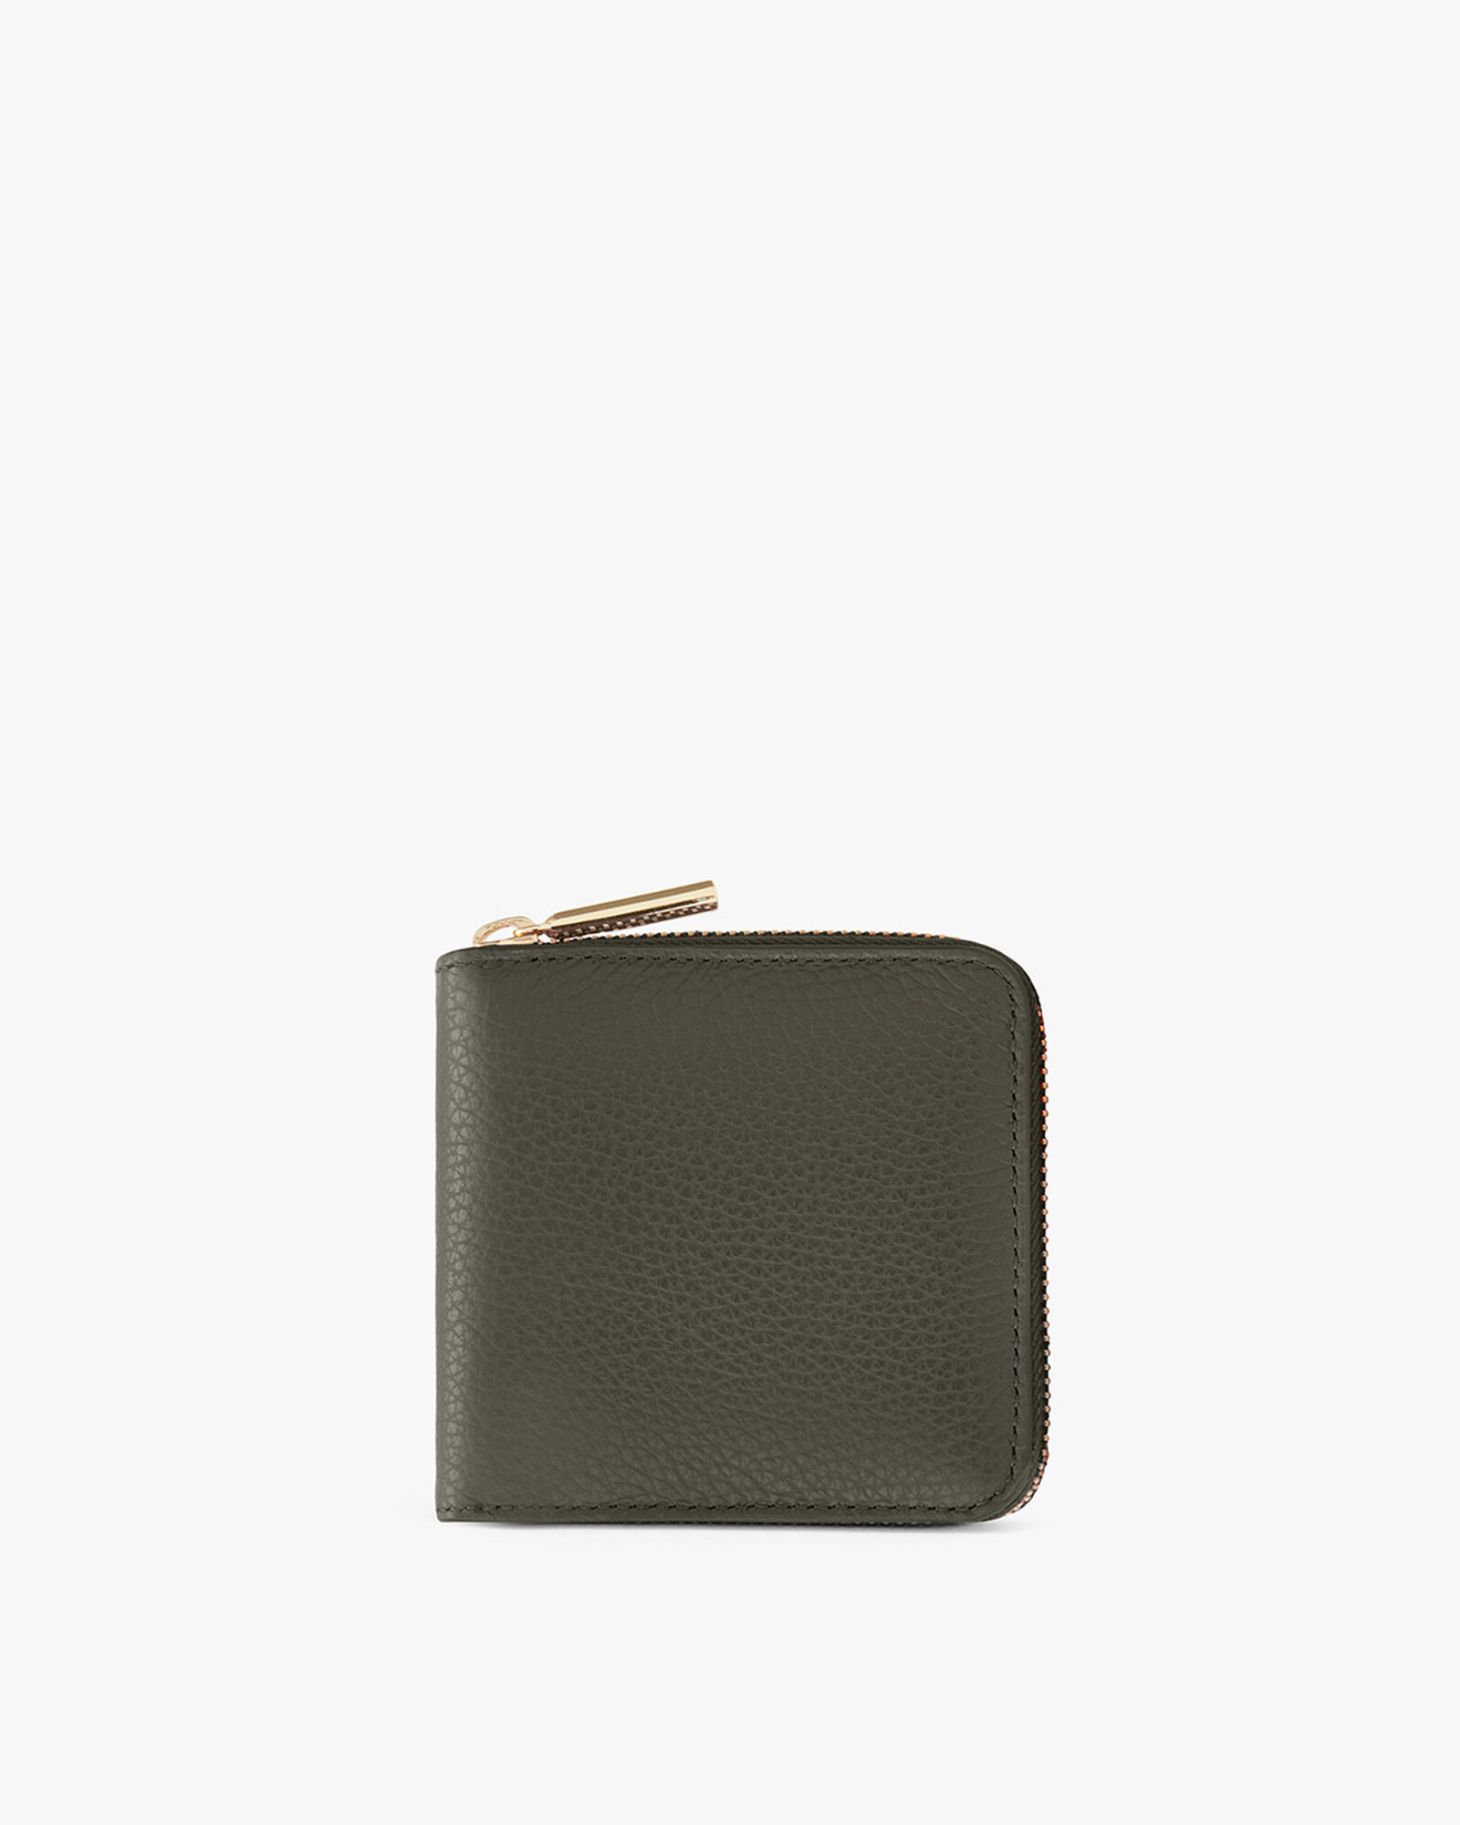 cuyana classic zip around wallet